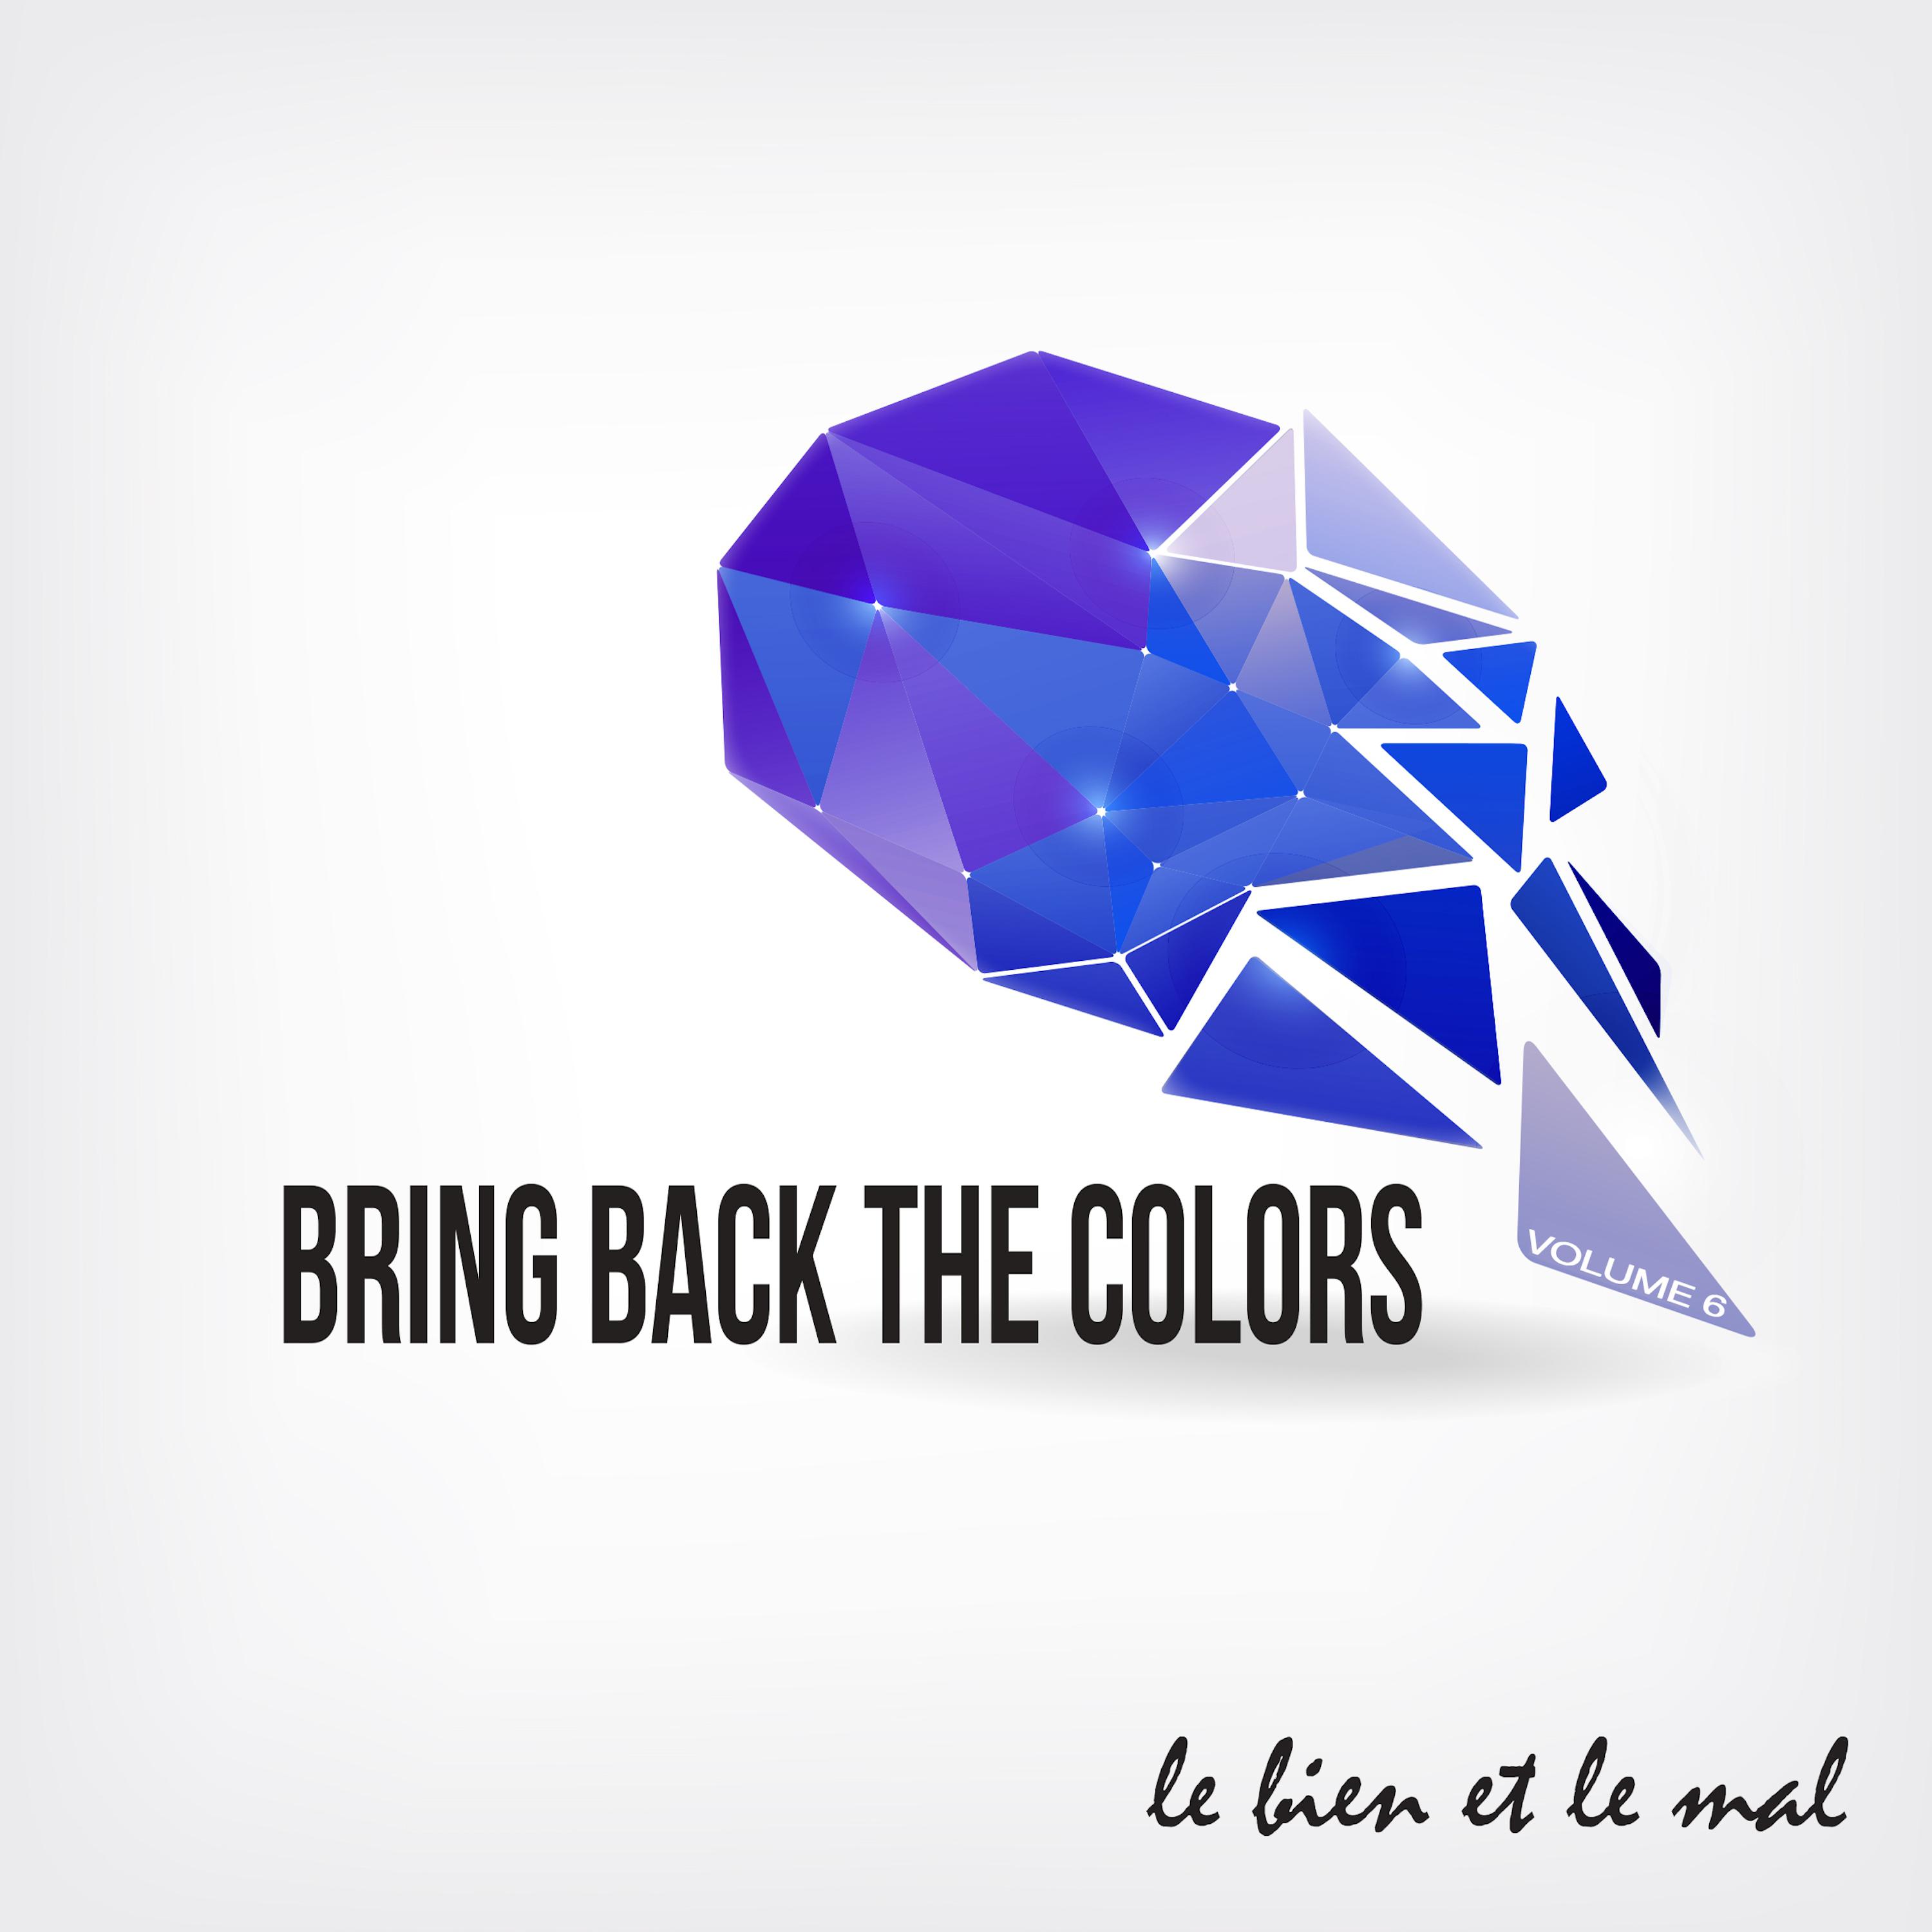 Bring Back the Colors, Vol. 06